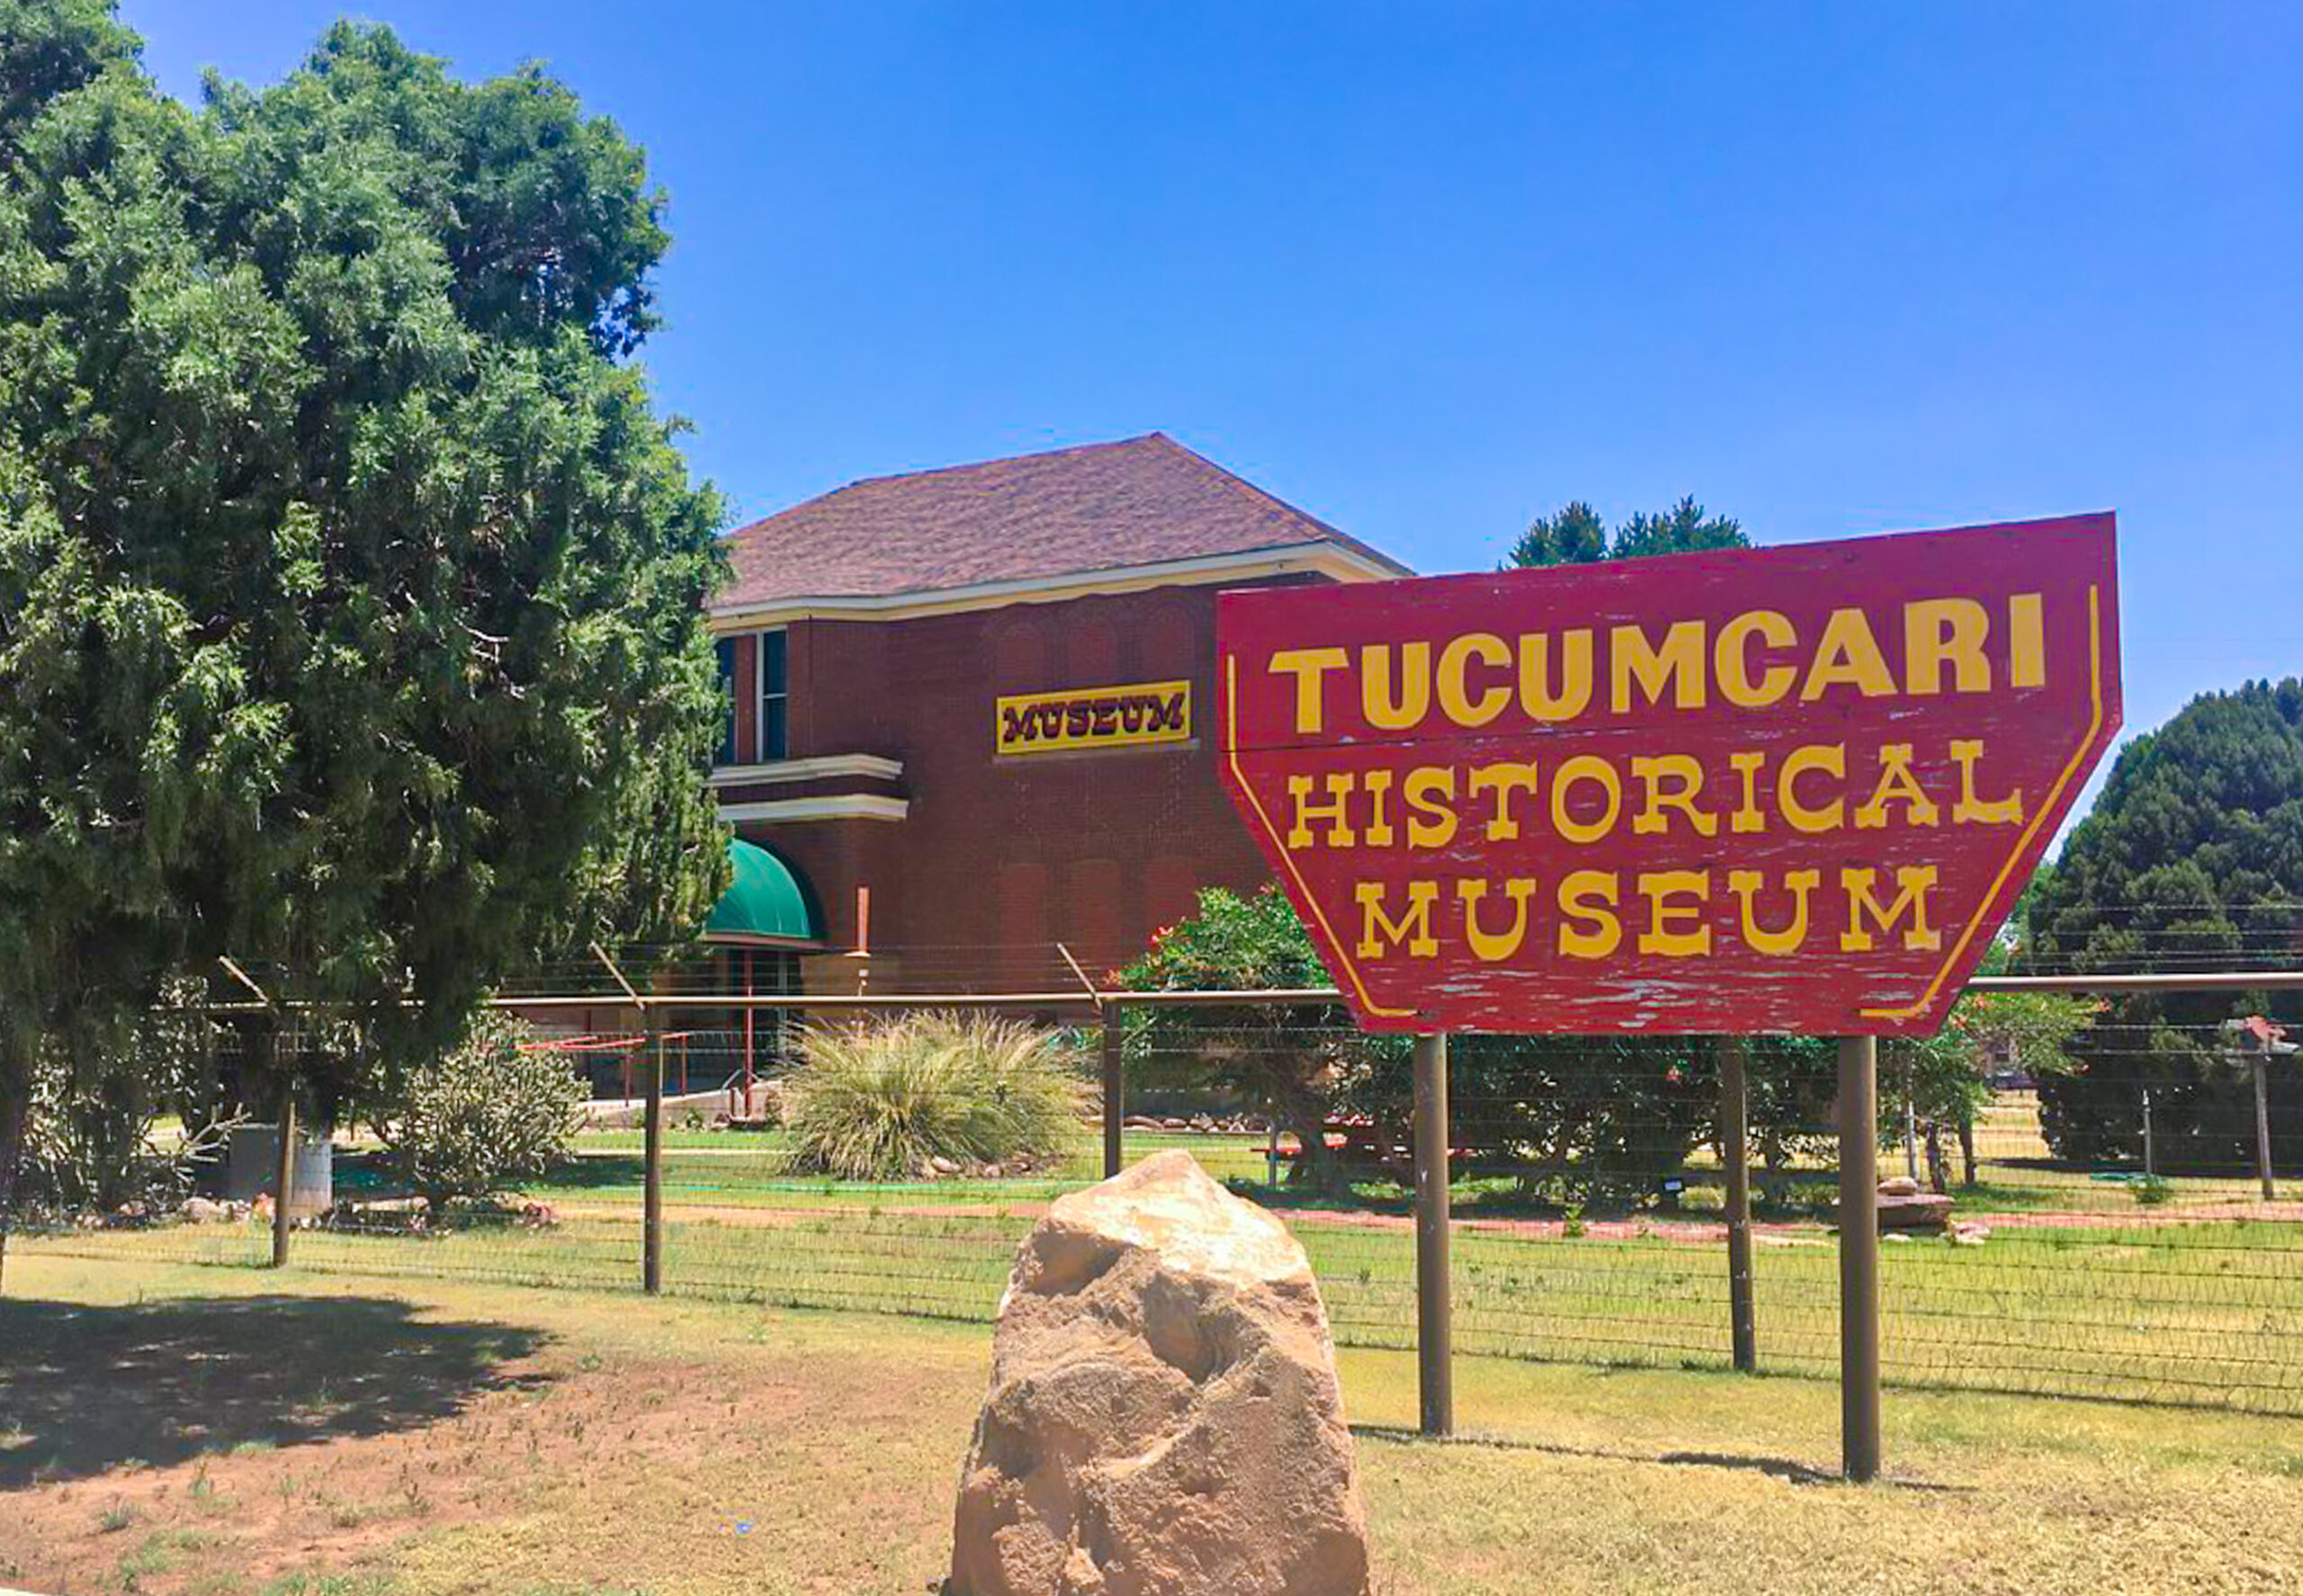 route 66 museum tucumcari nm historical